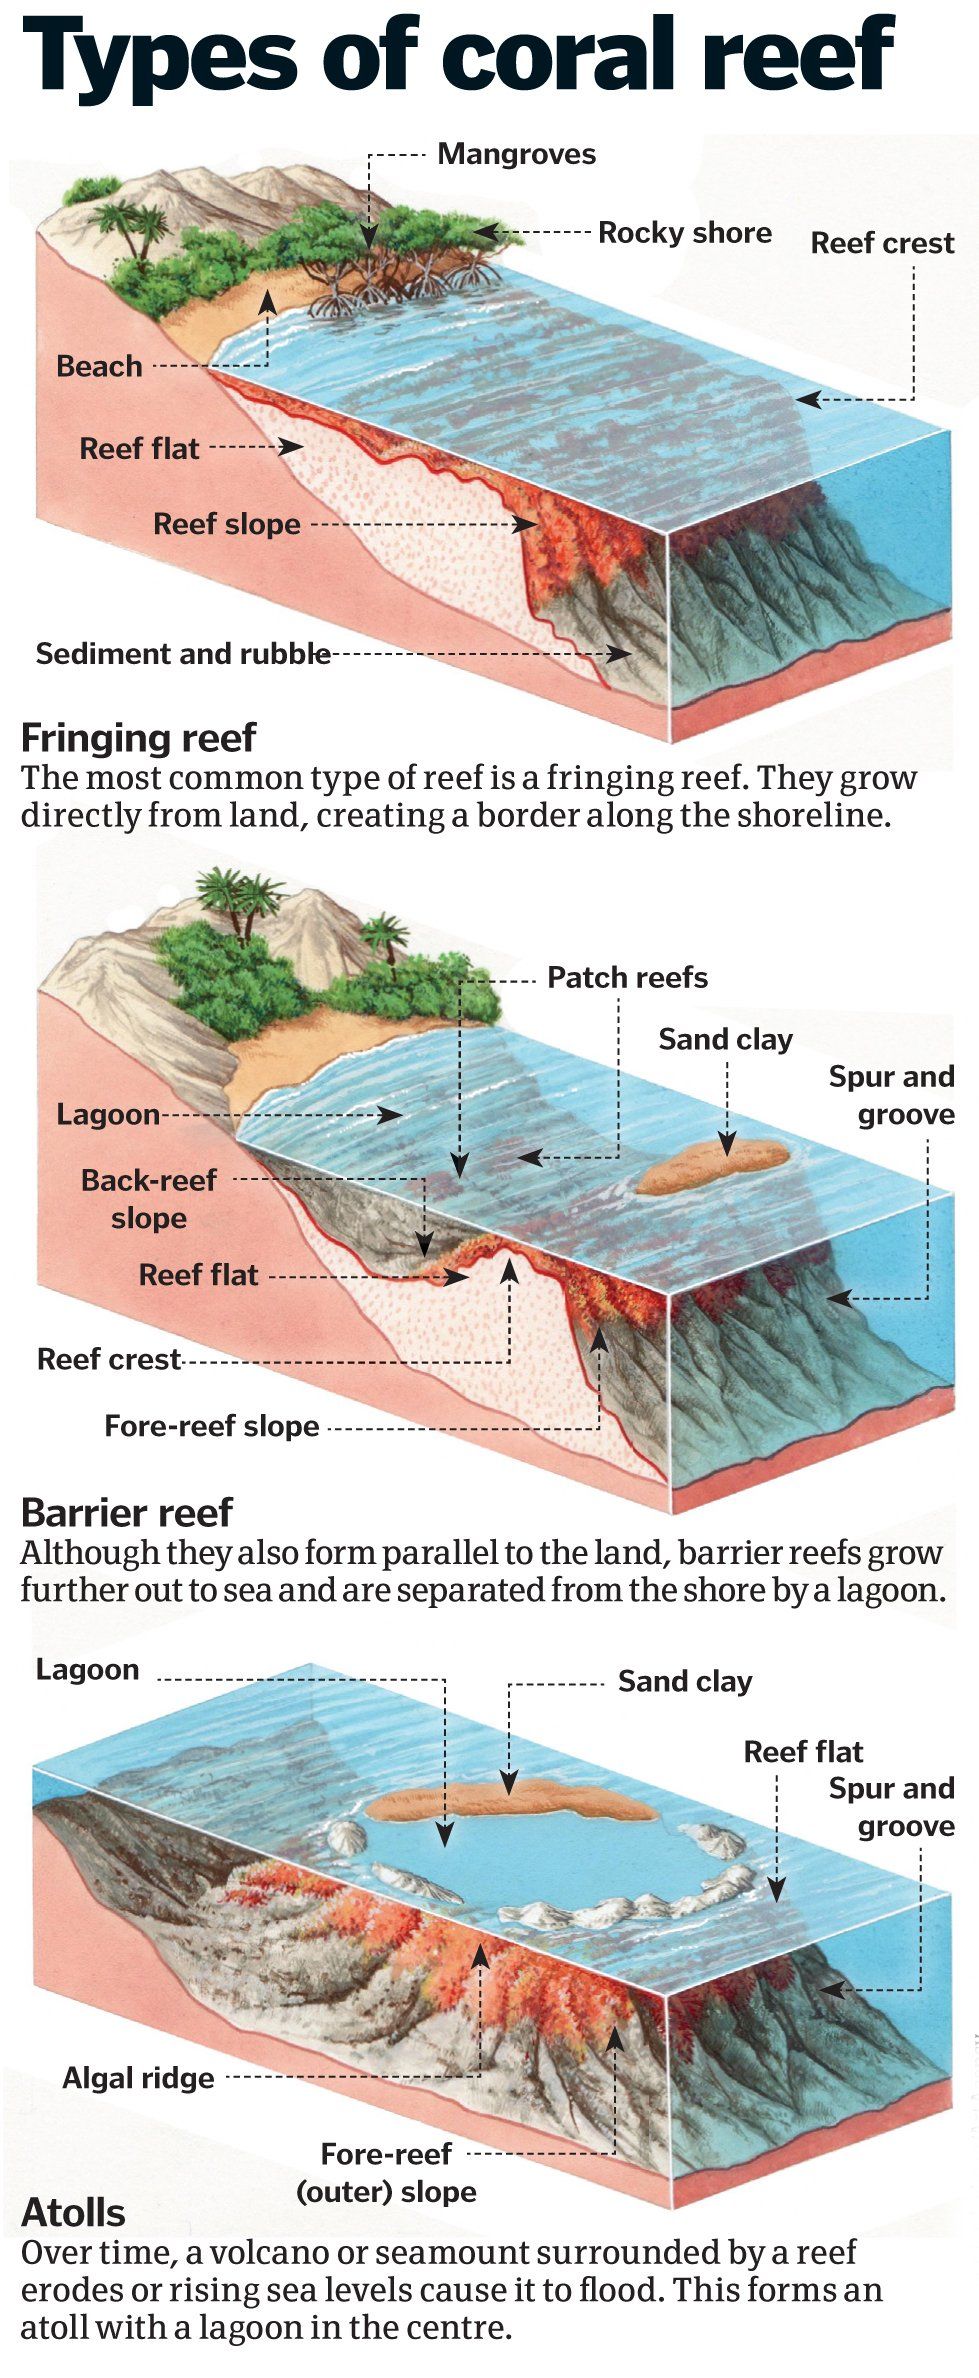 types of reefs.jpg